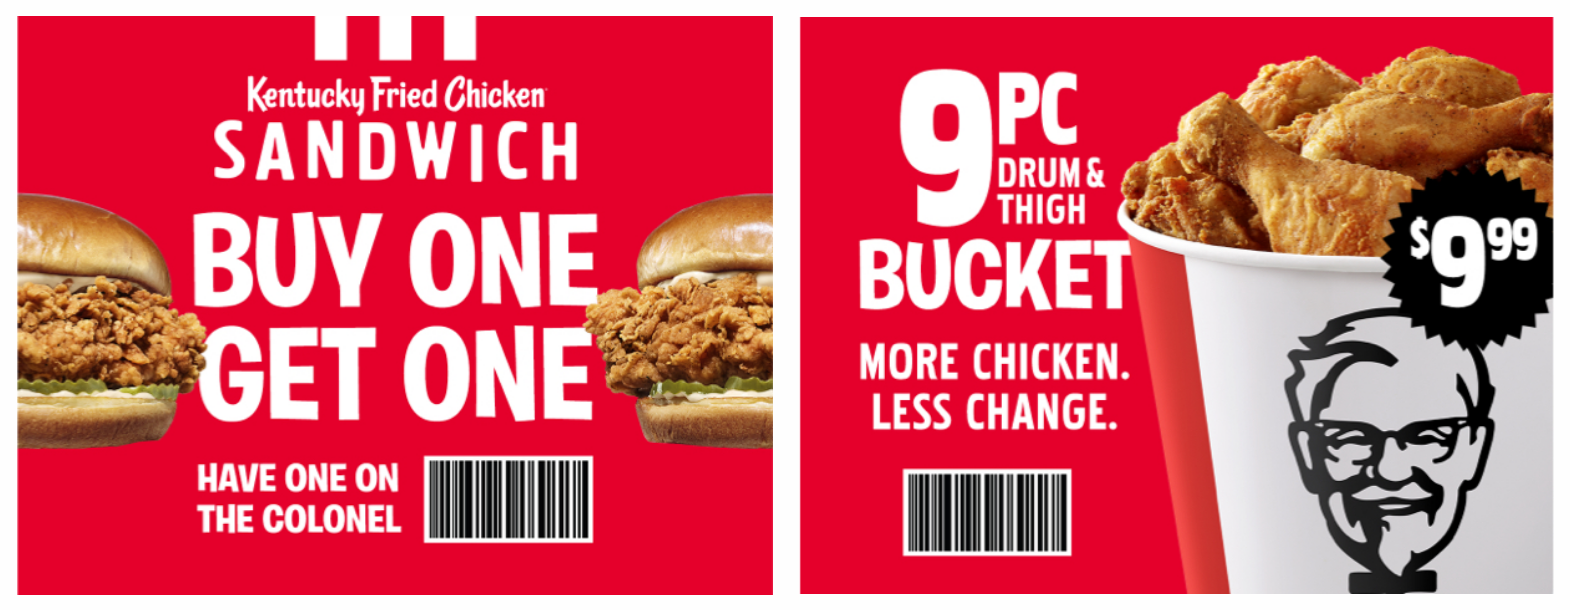 KFC Coupons BOGO Chicken Sandwich, 9pc Drum & Thigh Basket 9.99